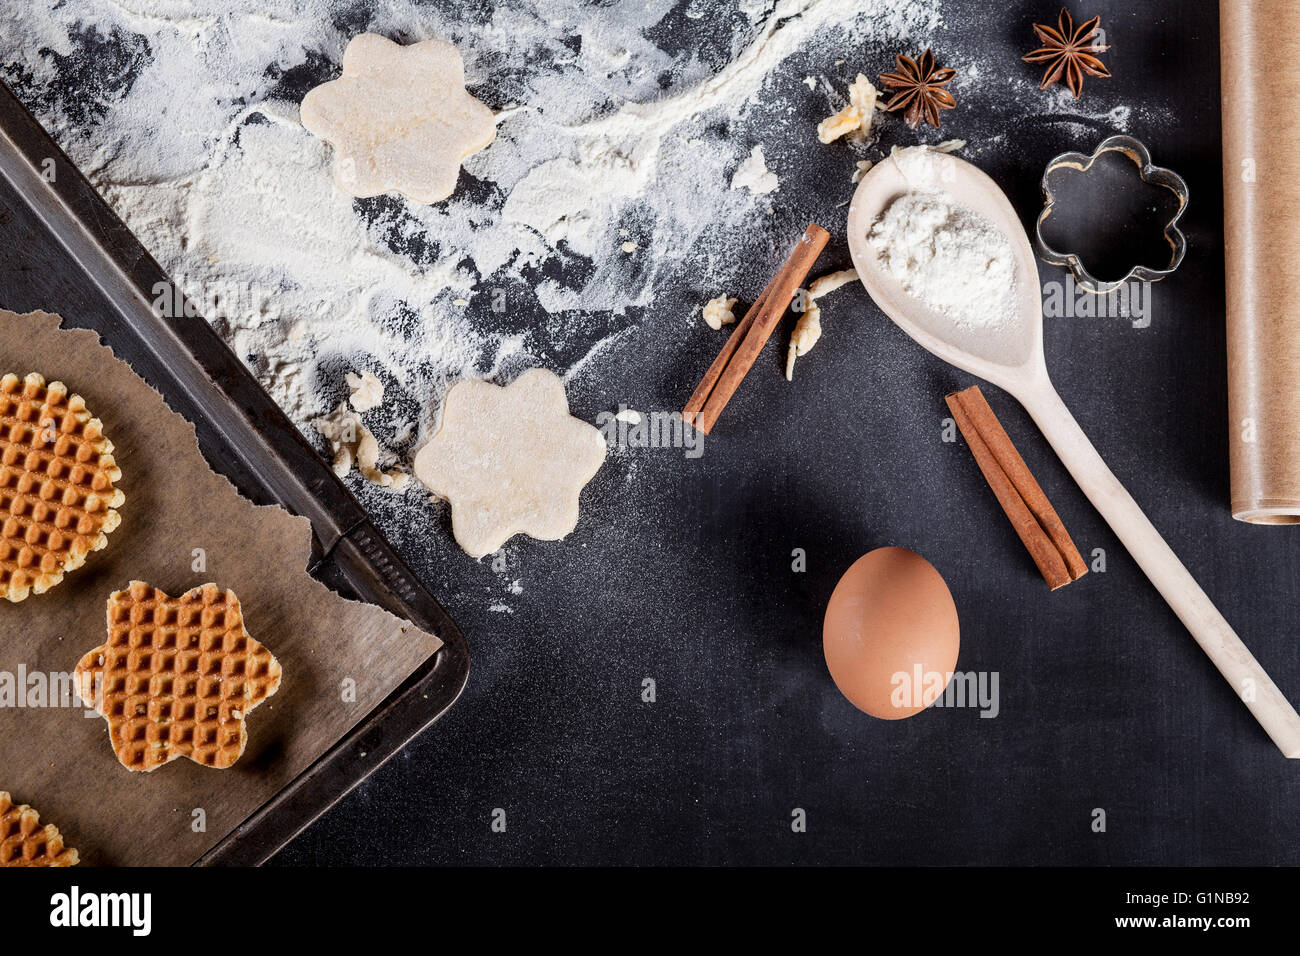 Waffle ingrédients comme les oeufs, la farine, la cannelle, l'anis, rouleau à pâtisserie, sur tableau noir du haut Banque D'Images